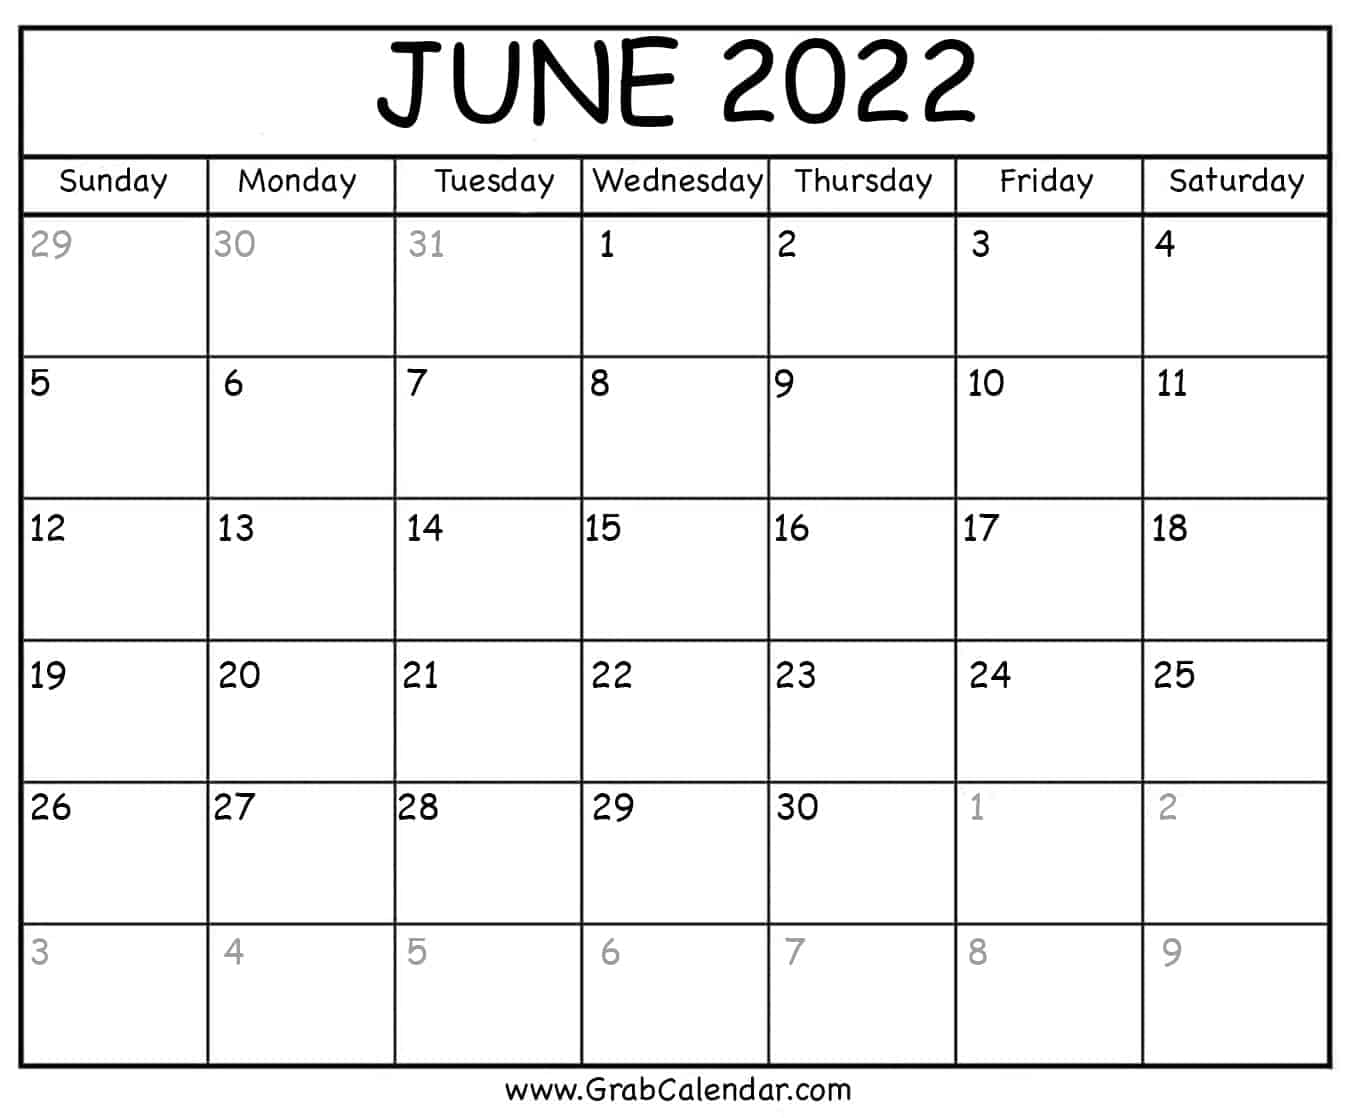 Print Calendar June 2022 Printable June 2022 Calendar